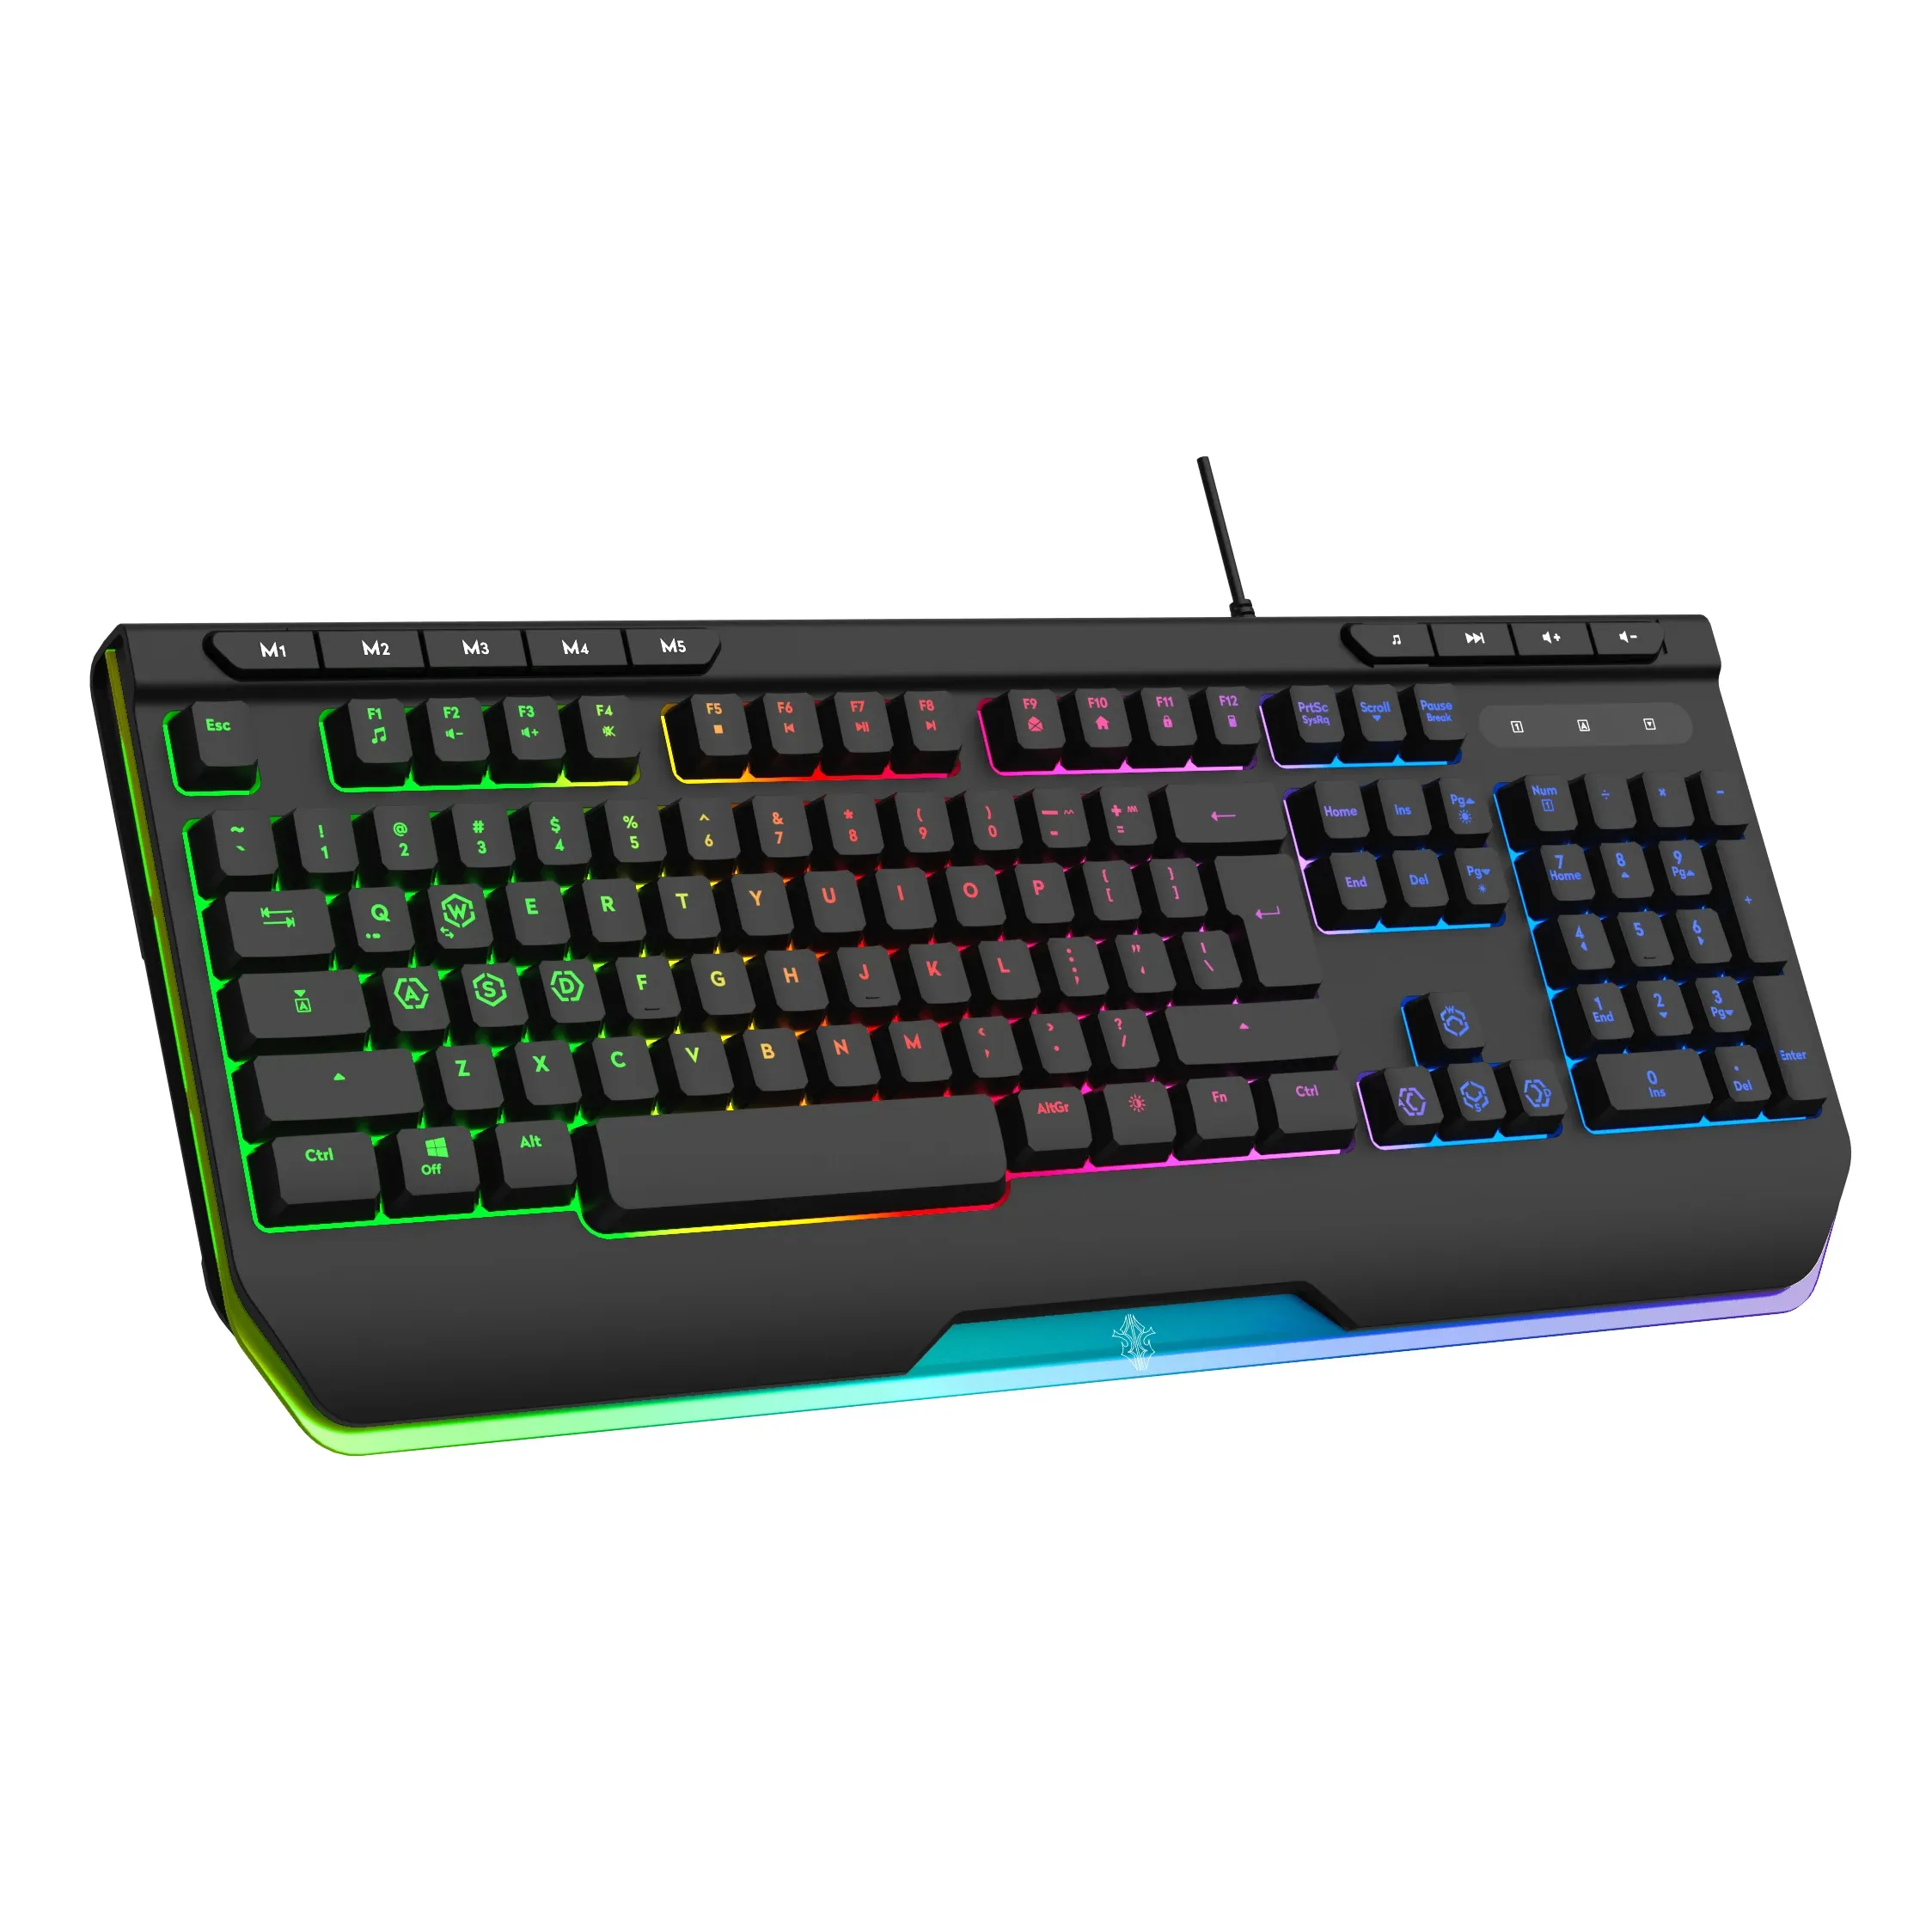 RGB LED espagnol royaume-uni russe personnalisé ordinateur mécanique ergpnomic clavier de jeu souris teclado gamer clavier filaire avec rétro-éclairé